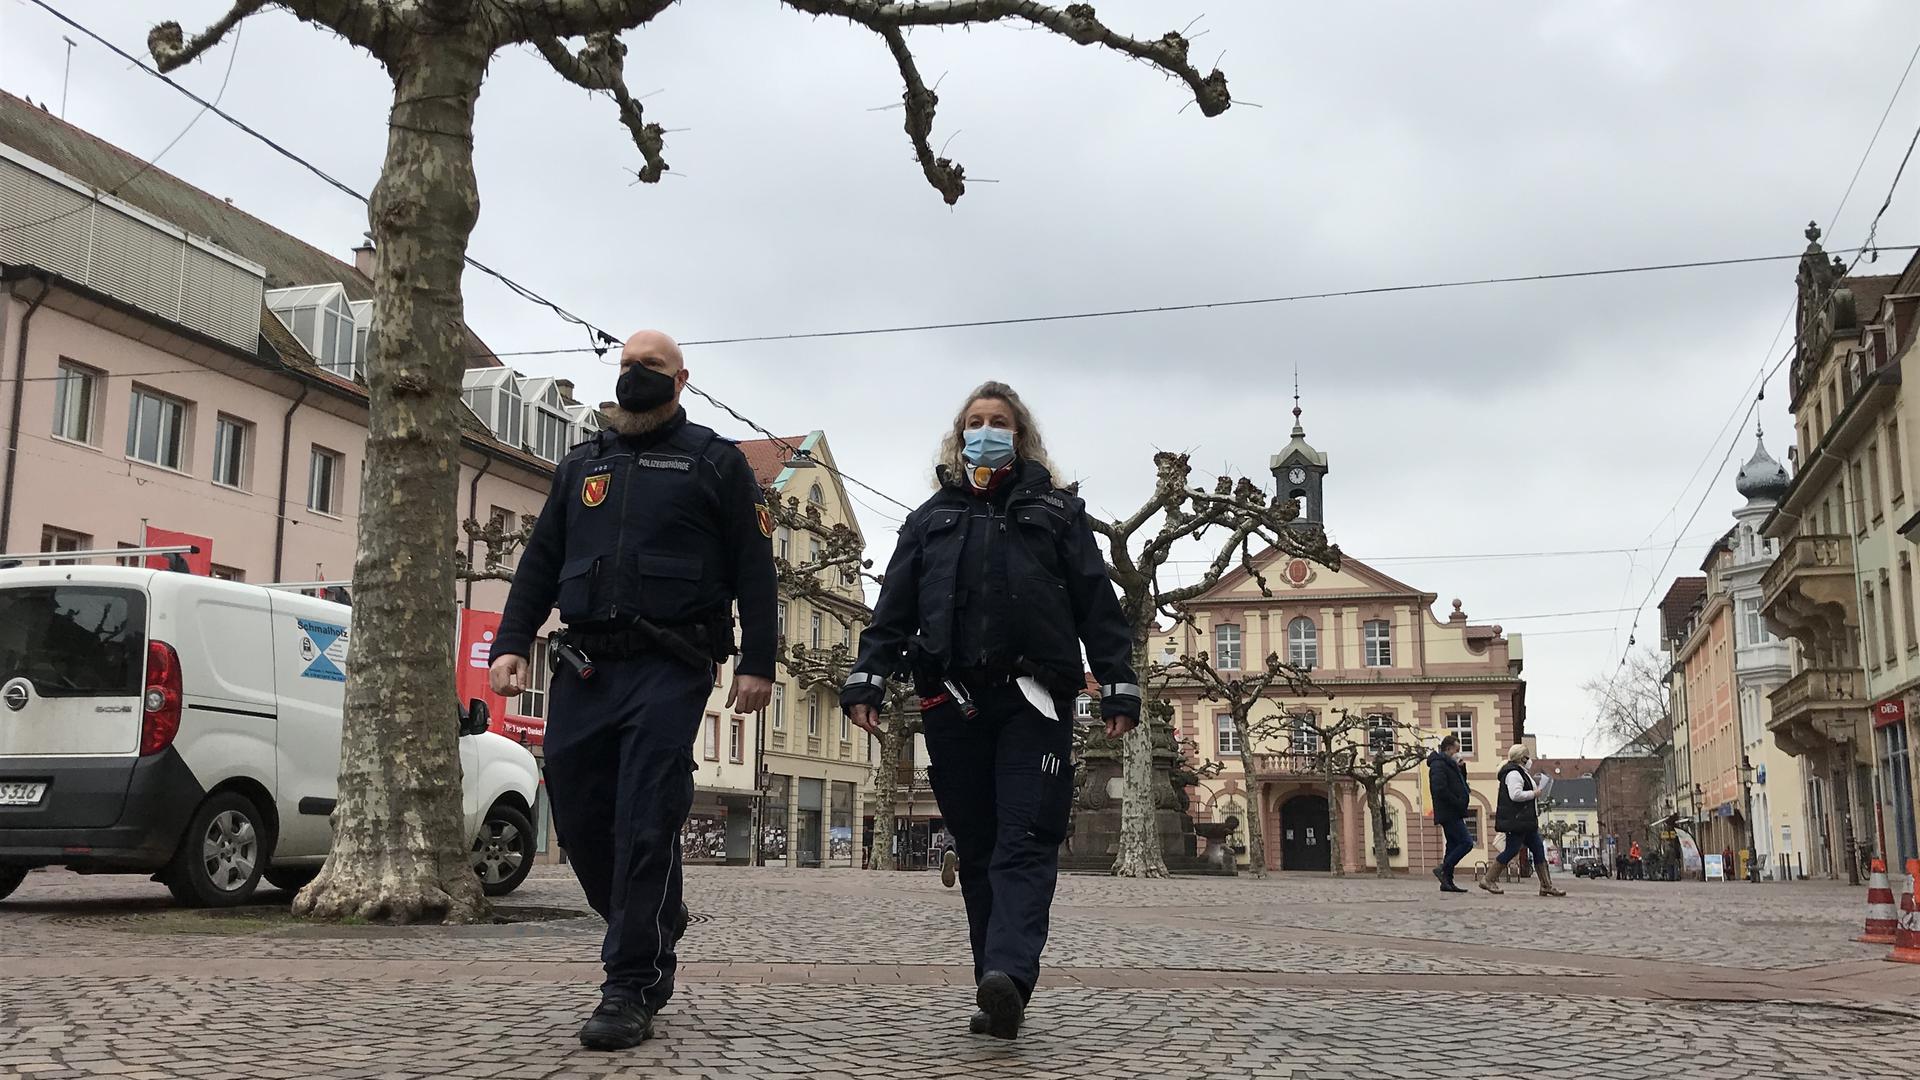 Auf Streife: Stadtpolizisten sind auf dem Marktplatz von Rastatt unterwegs. Insgesamt hat die Bußgeldstelle der Stadt im vergangenen Jahr 1.257 Anzeigen in Zusammenhang mit der Corona-Verordnung veranlasst. 